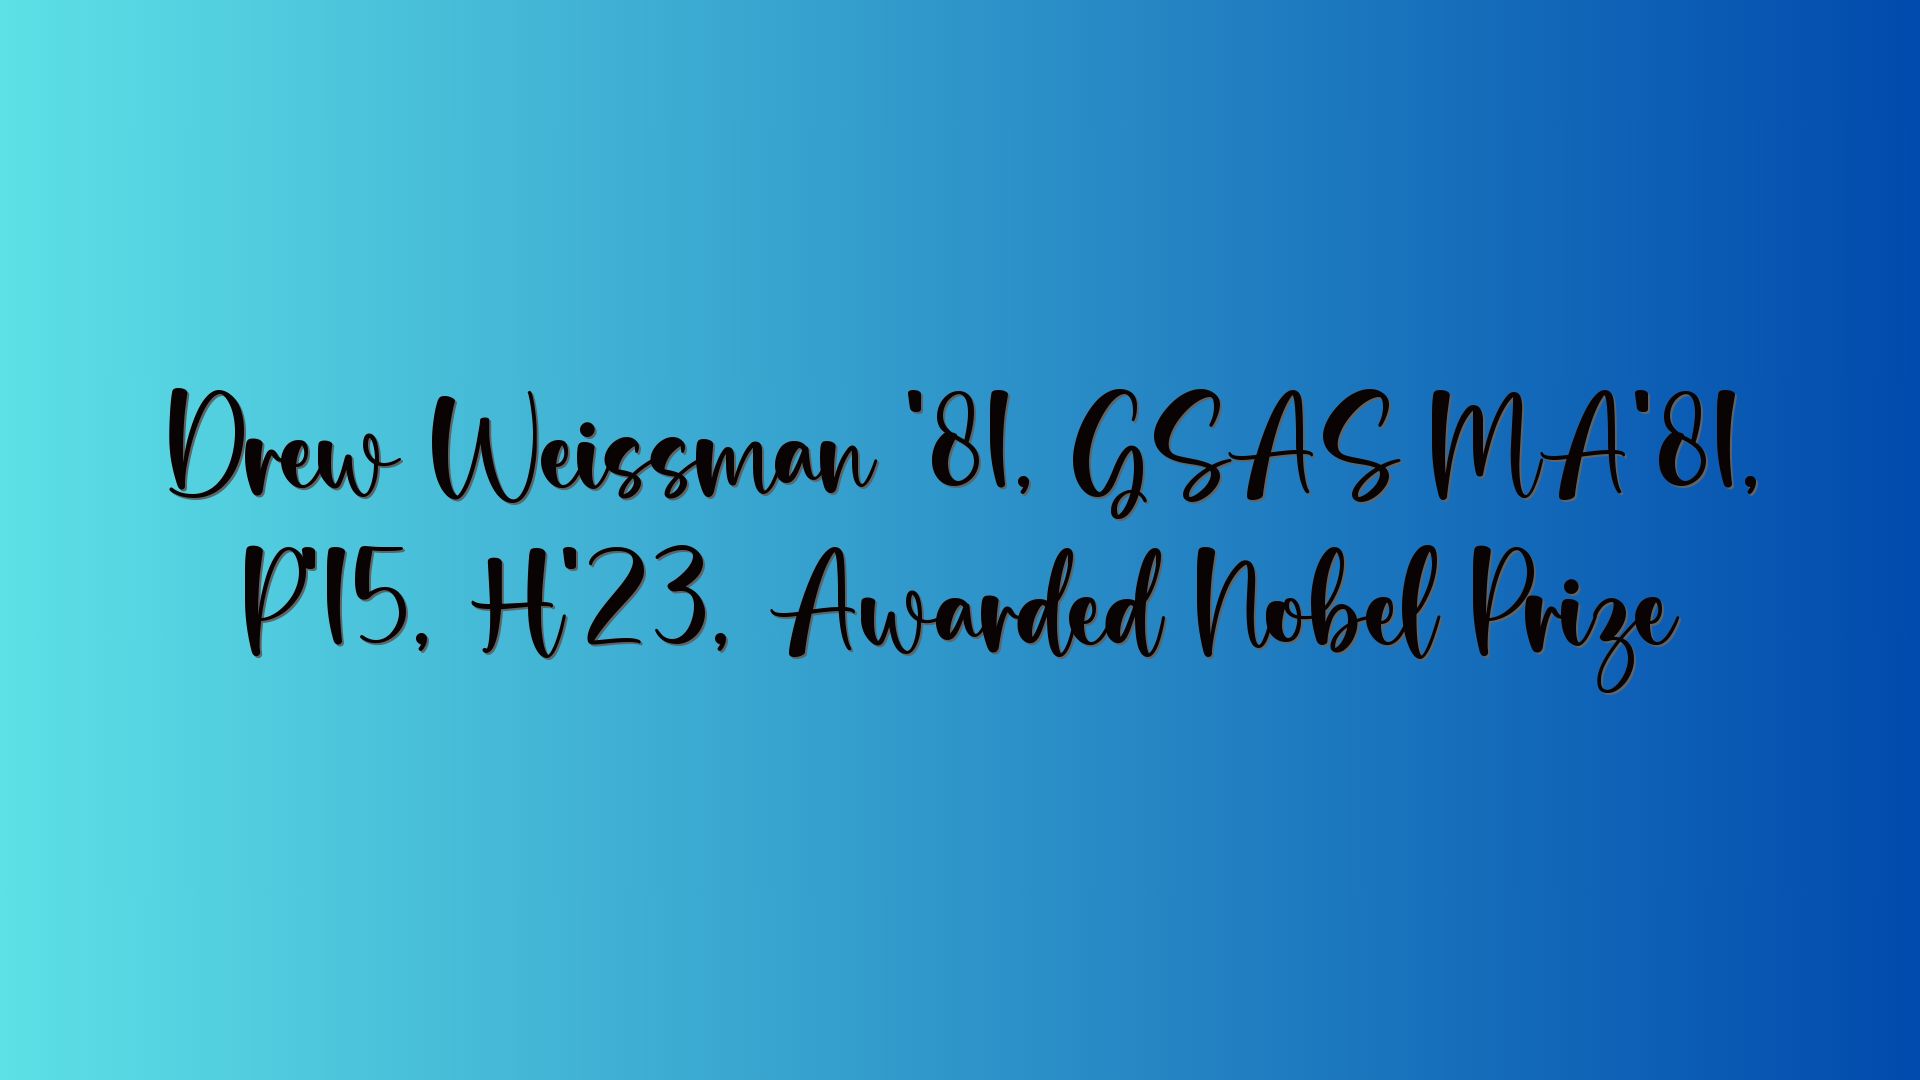 Drew Weissman ’81, GSAS MA’81, P’15, H’23, Awarded Nobel Prize